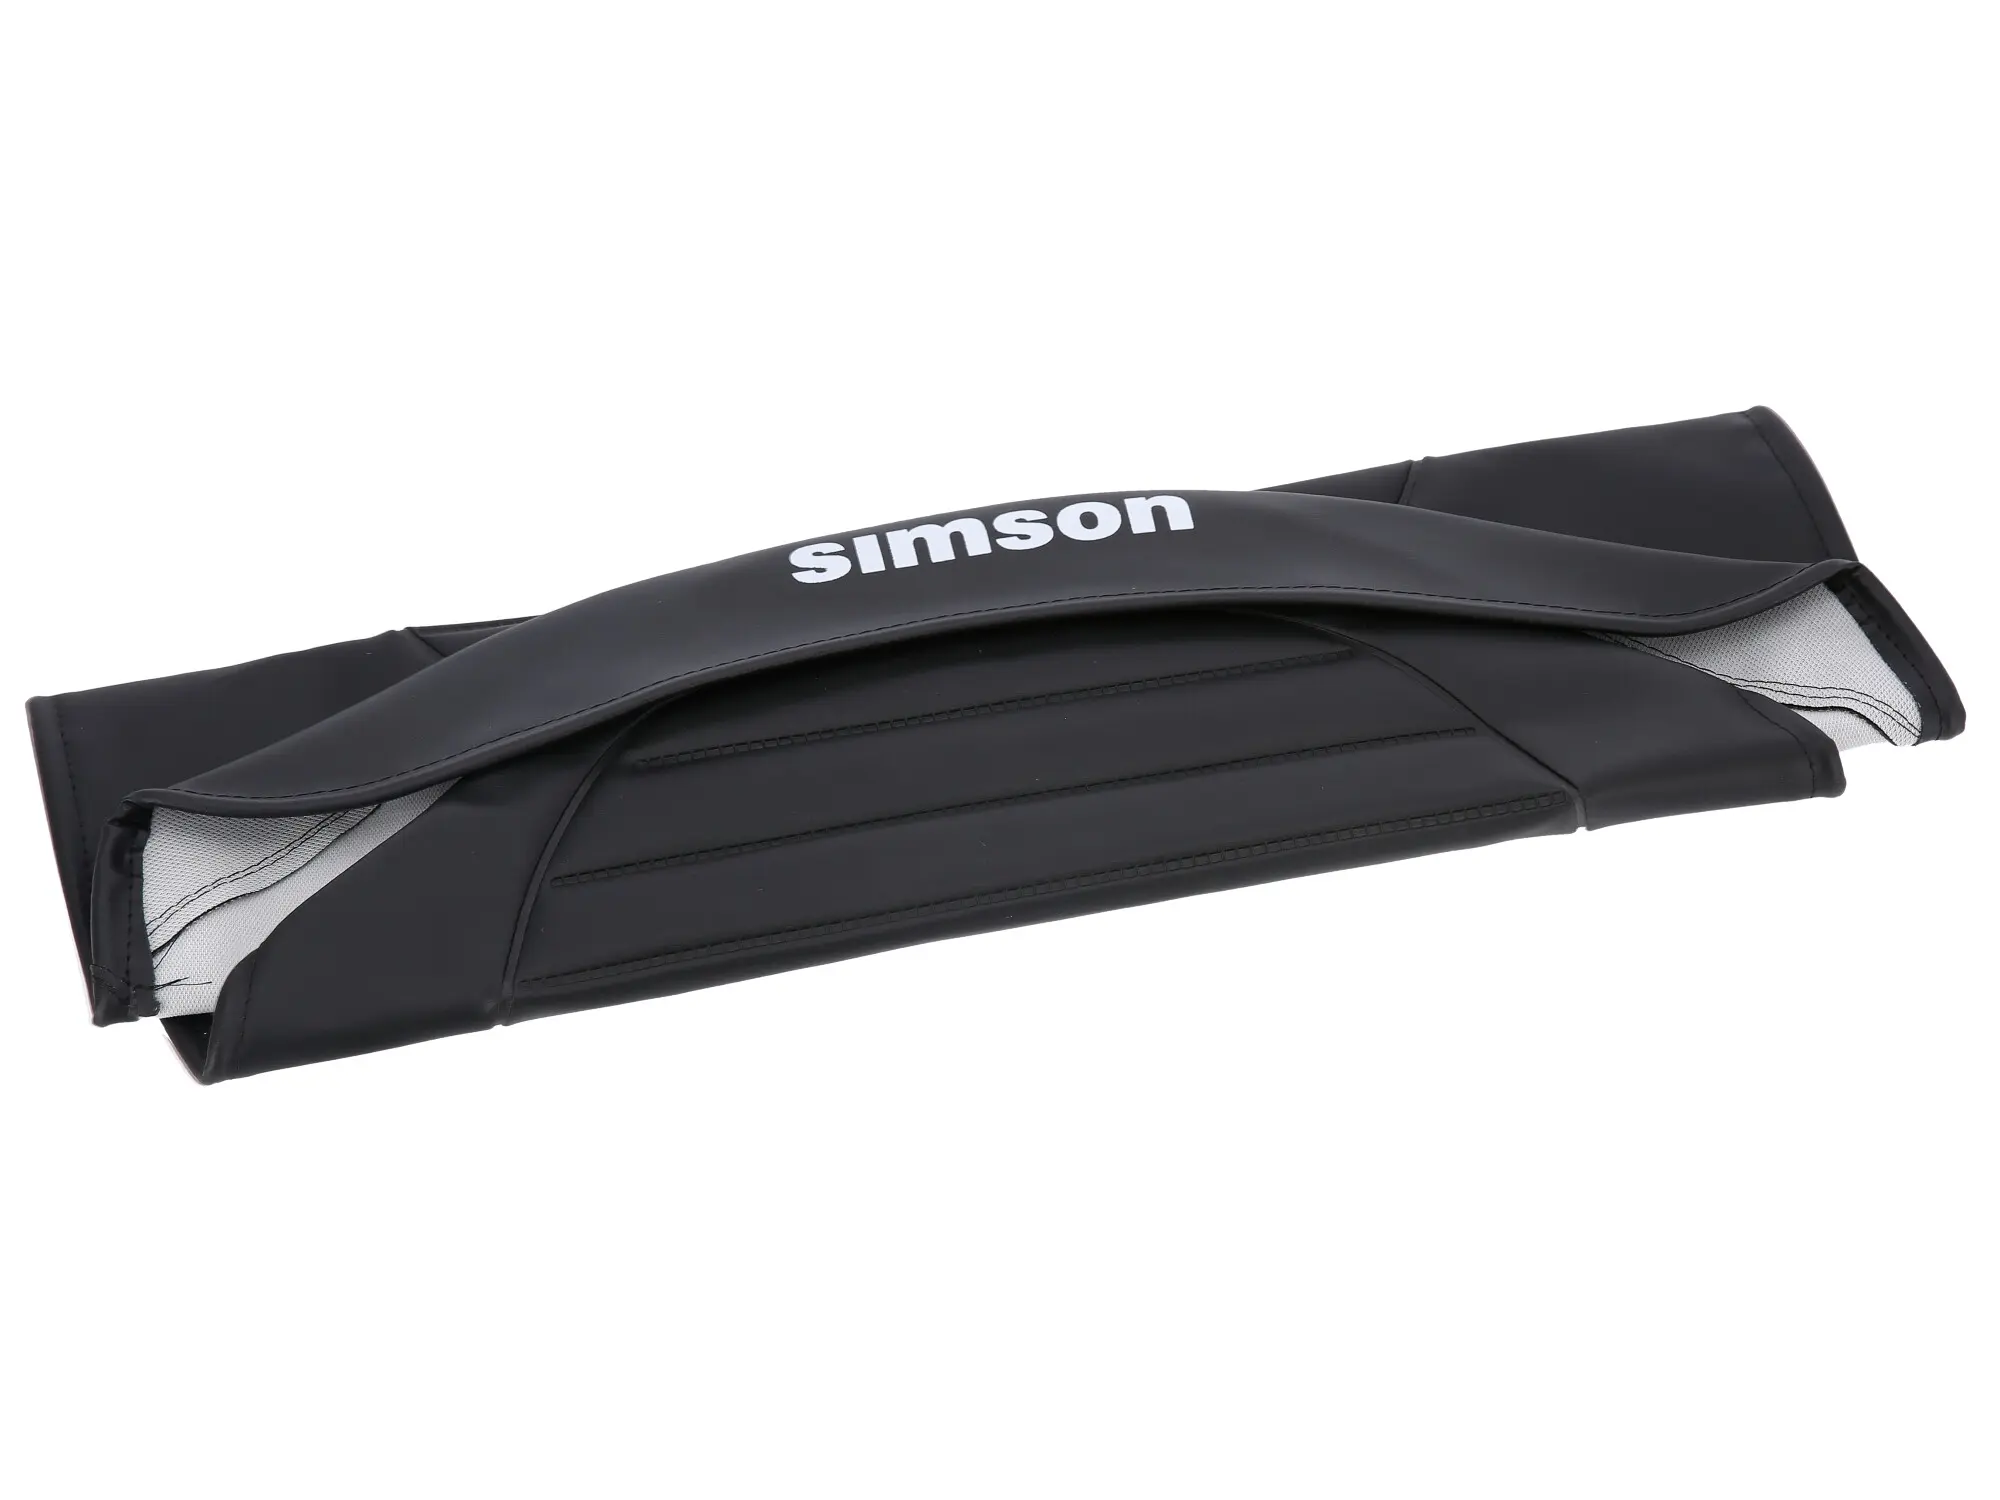 Sitzbezug strukturiert, schwarz mit SIMSON-Schriftzug - Simson S53, S83, SR50, SR80, Art.-Nr.: 10002838 - Bild 1